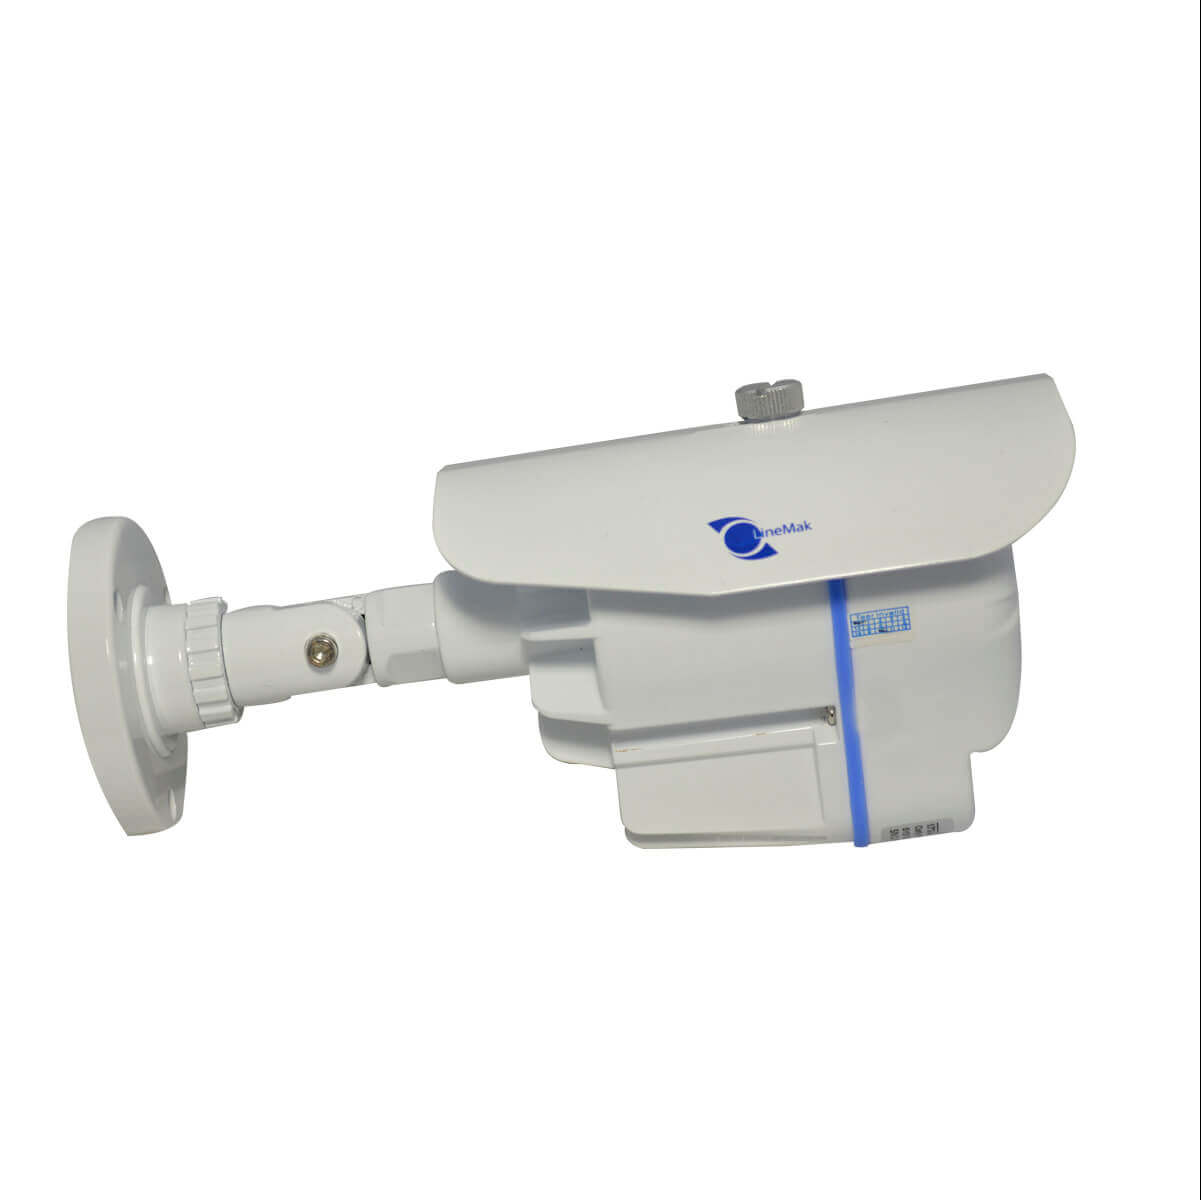 Camara bazuca, Sensor CCD 1/3, 700TVL, lente 6mm, 1 LED Array, 30m IR